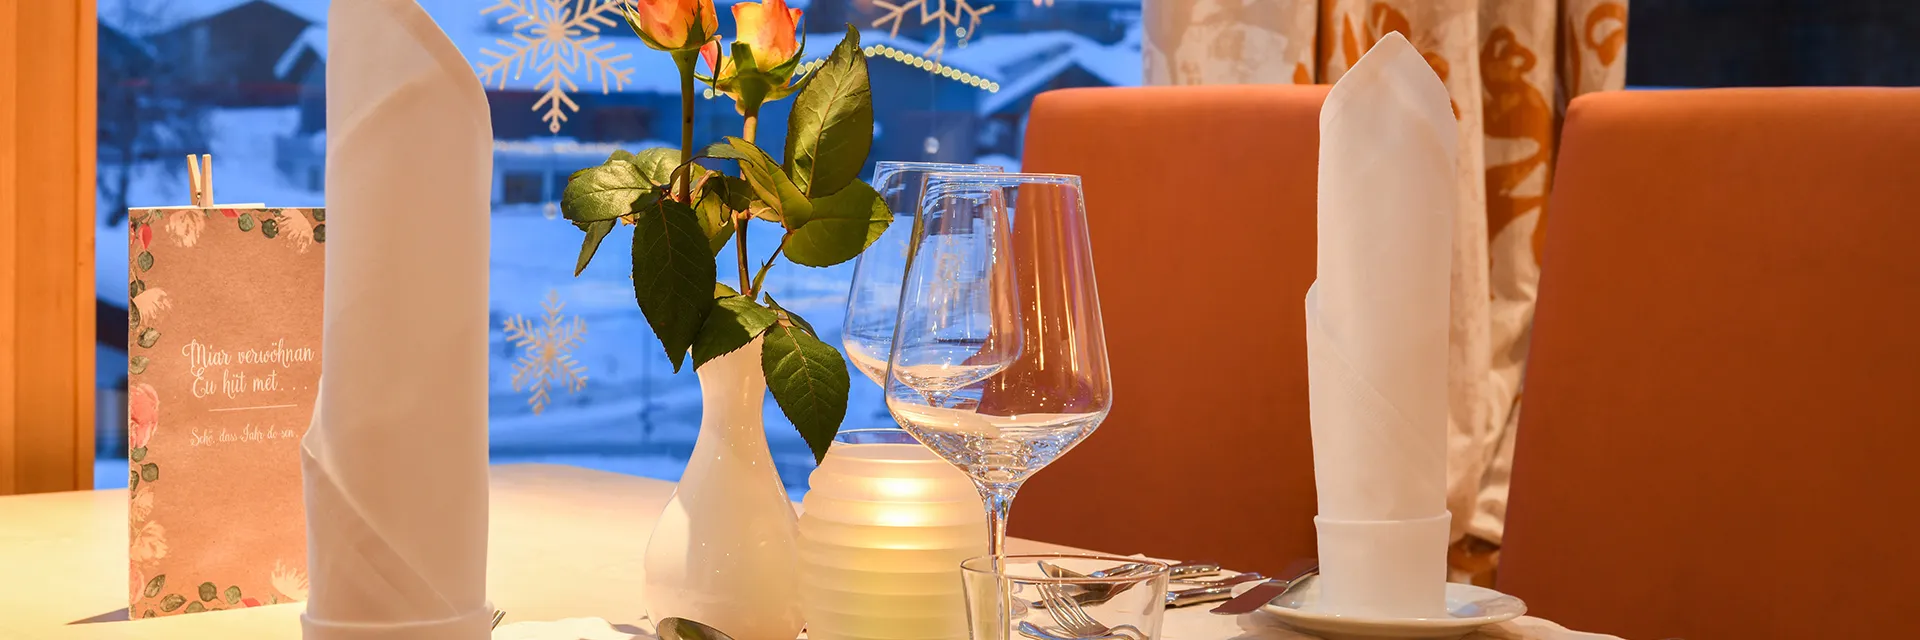 Schön dekorierter Tisch im Hotel Silbertal im Winter